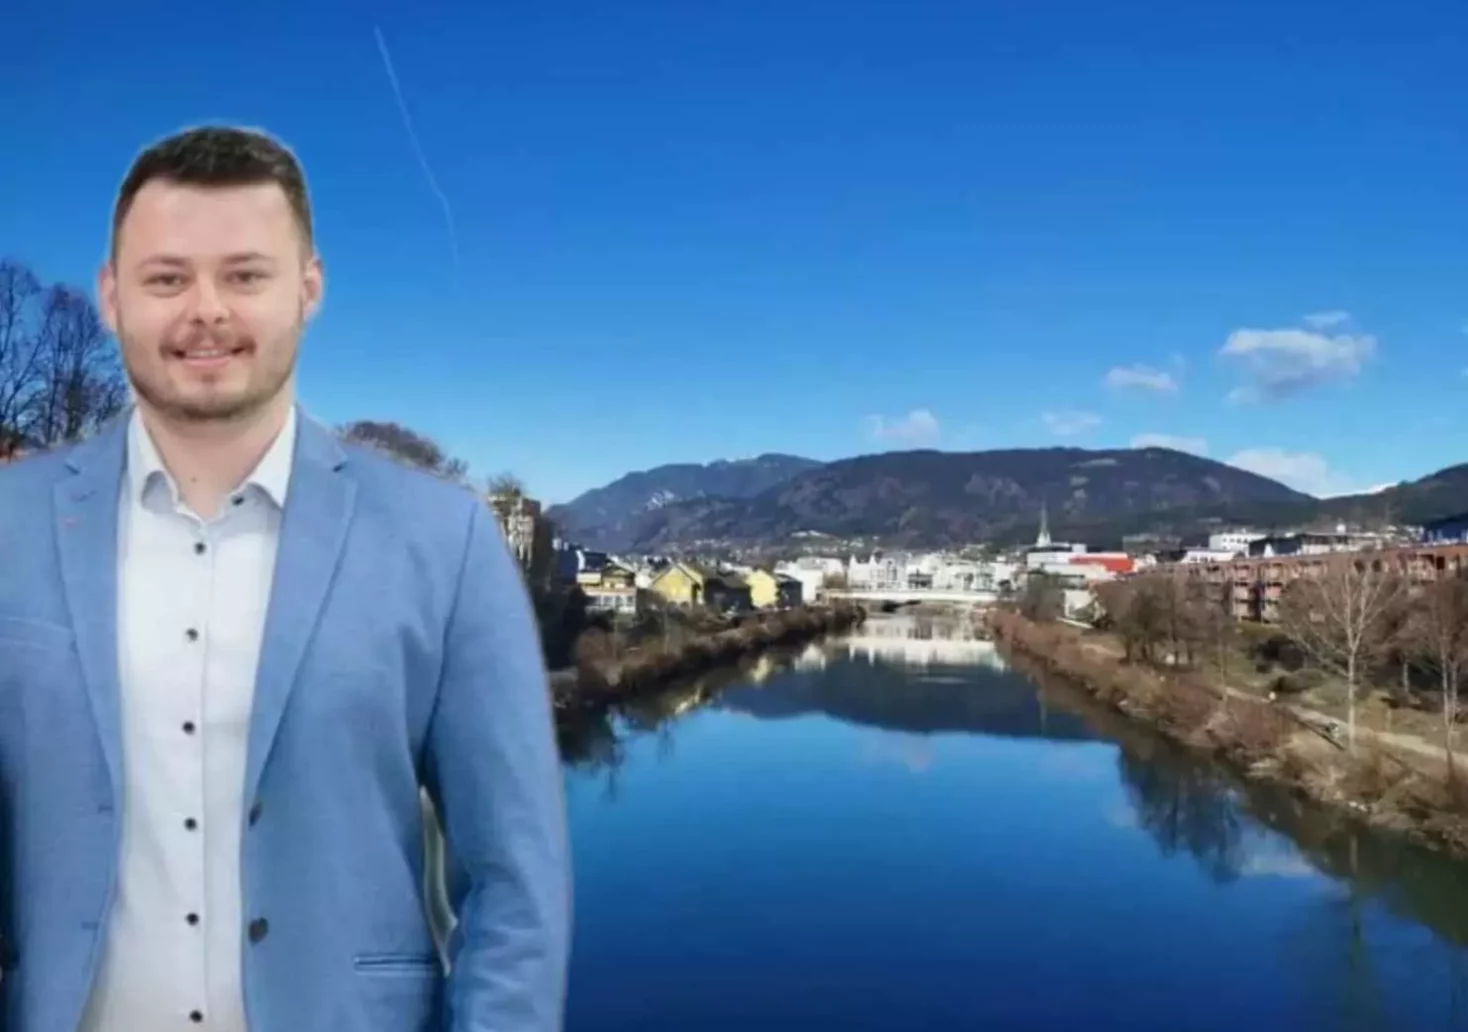 Foto in Beitrag von 5min.at: Zu sehen ist der neue SPÖ Bezirksgeschäftsführer für Villach Stadt und Land, Dominik Steinwender.